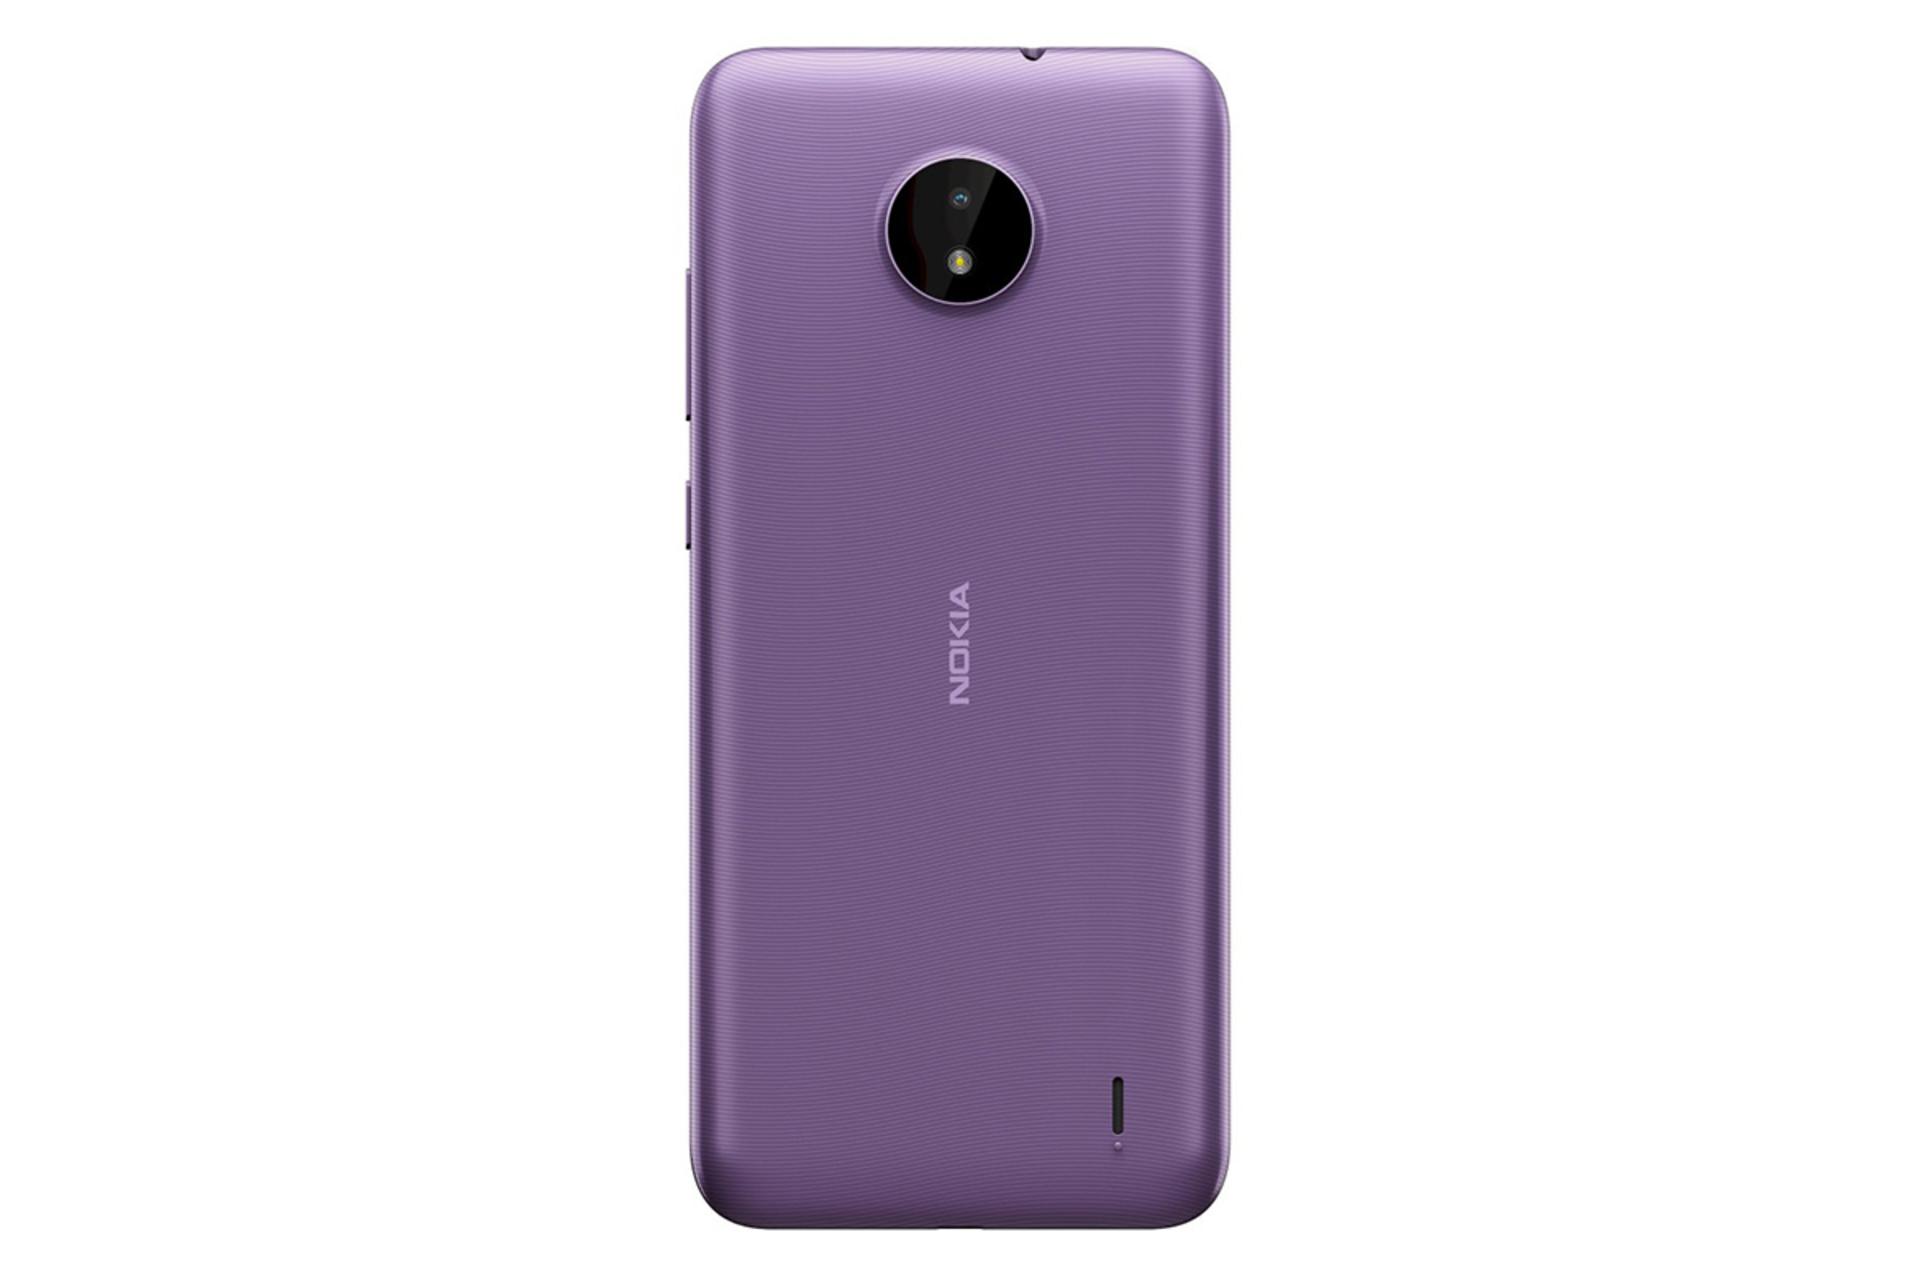 نمای پشت گوشی نوکیا سی 10 رنگ بنفش / Nokia C10